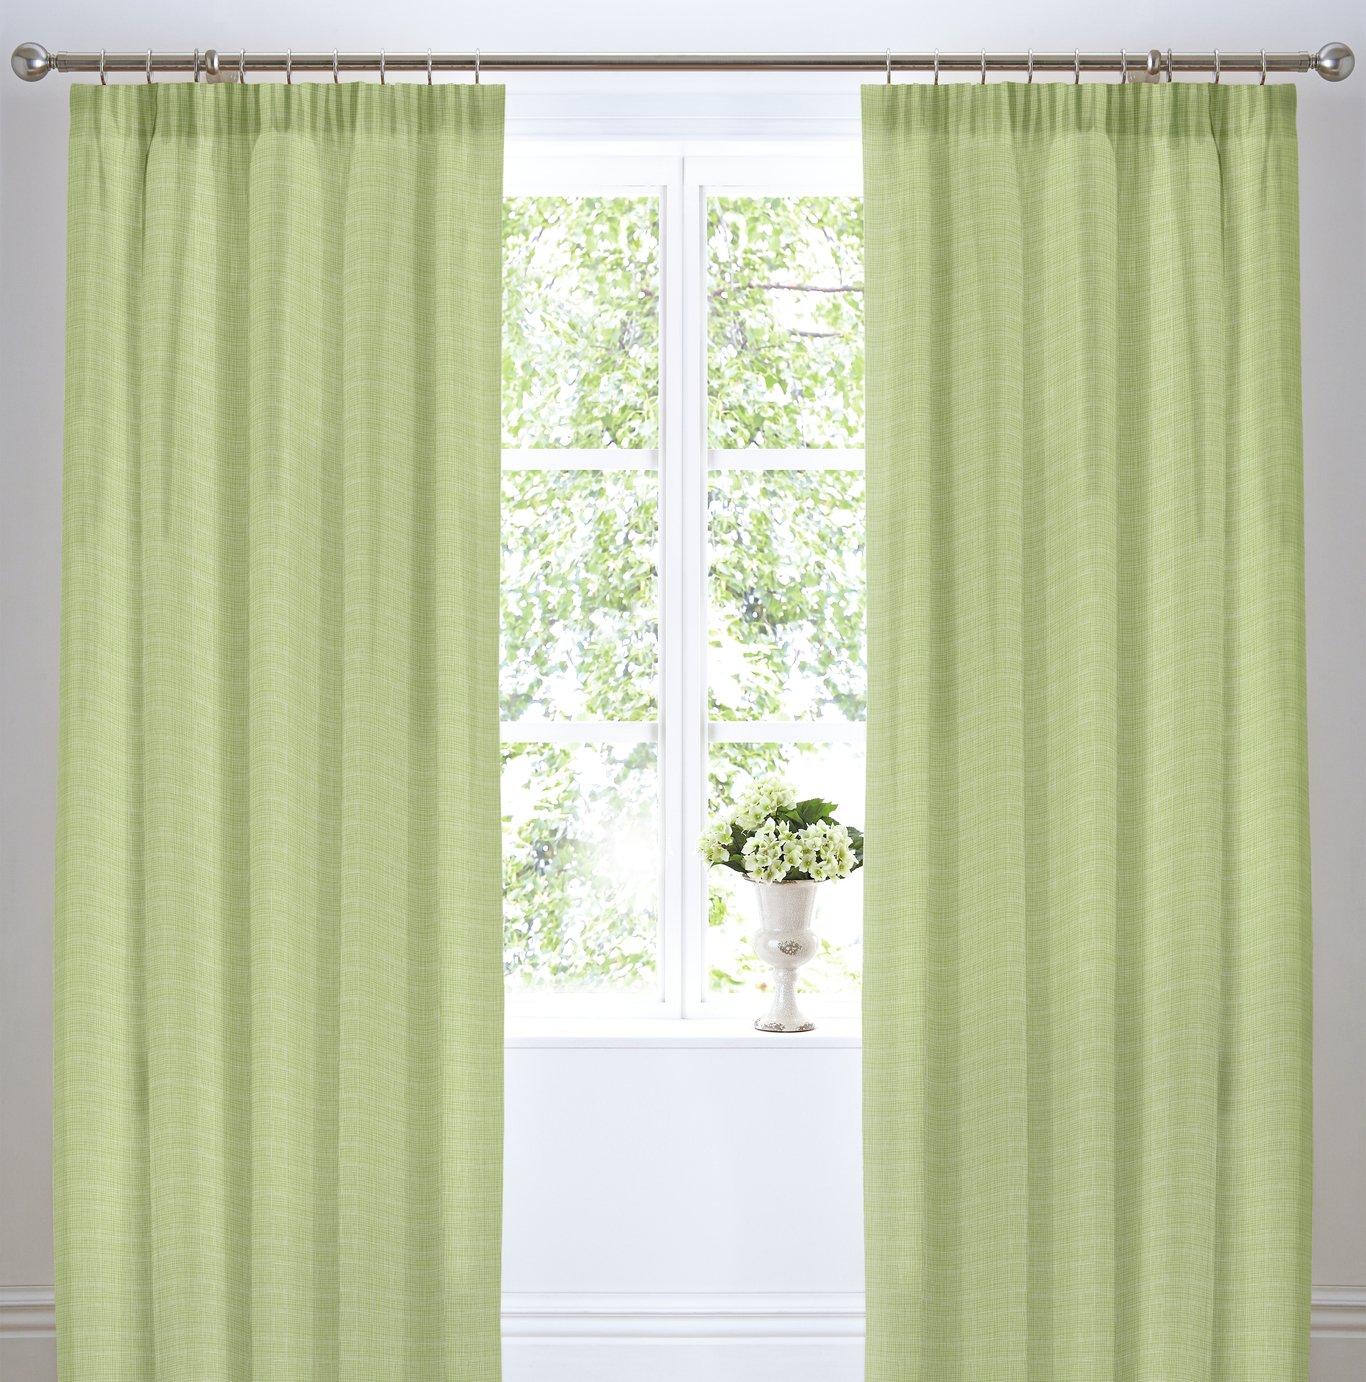 Dreams N Drapes Botanique Lined Curtains 168x183cm review